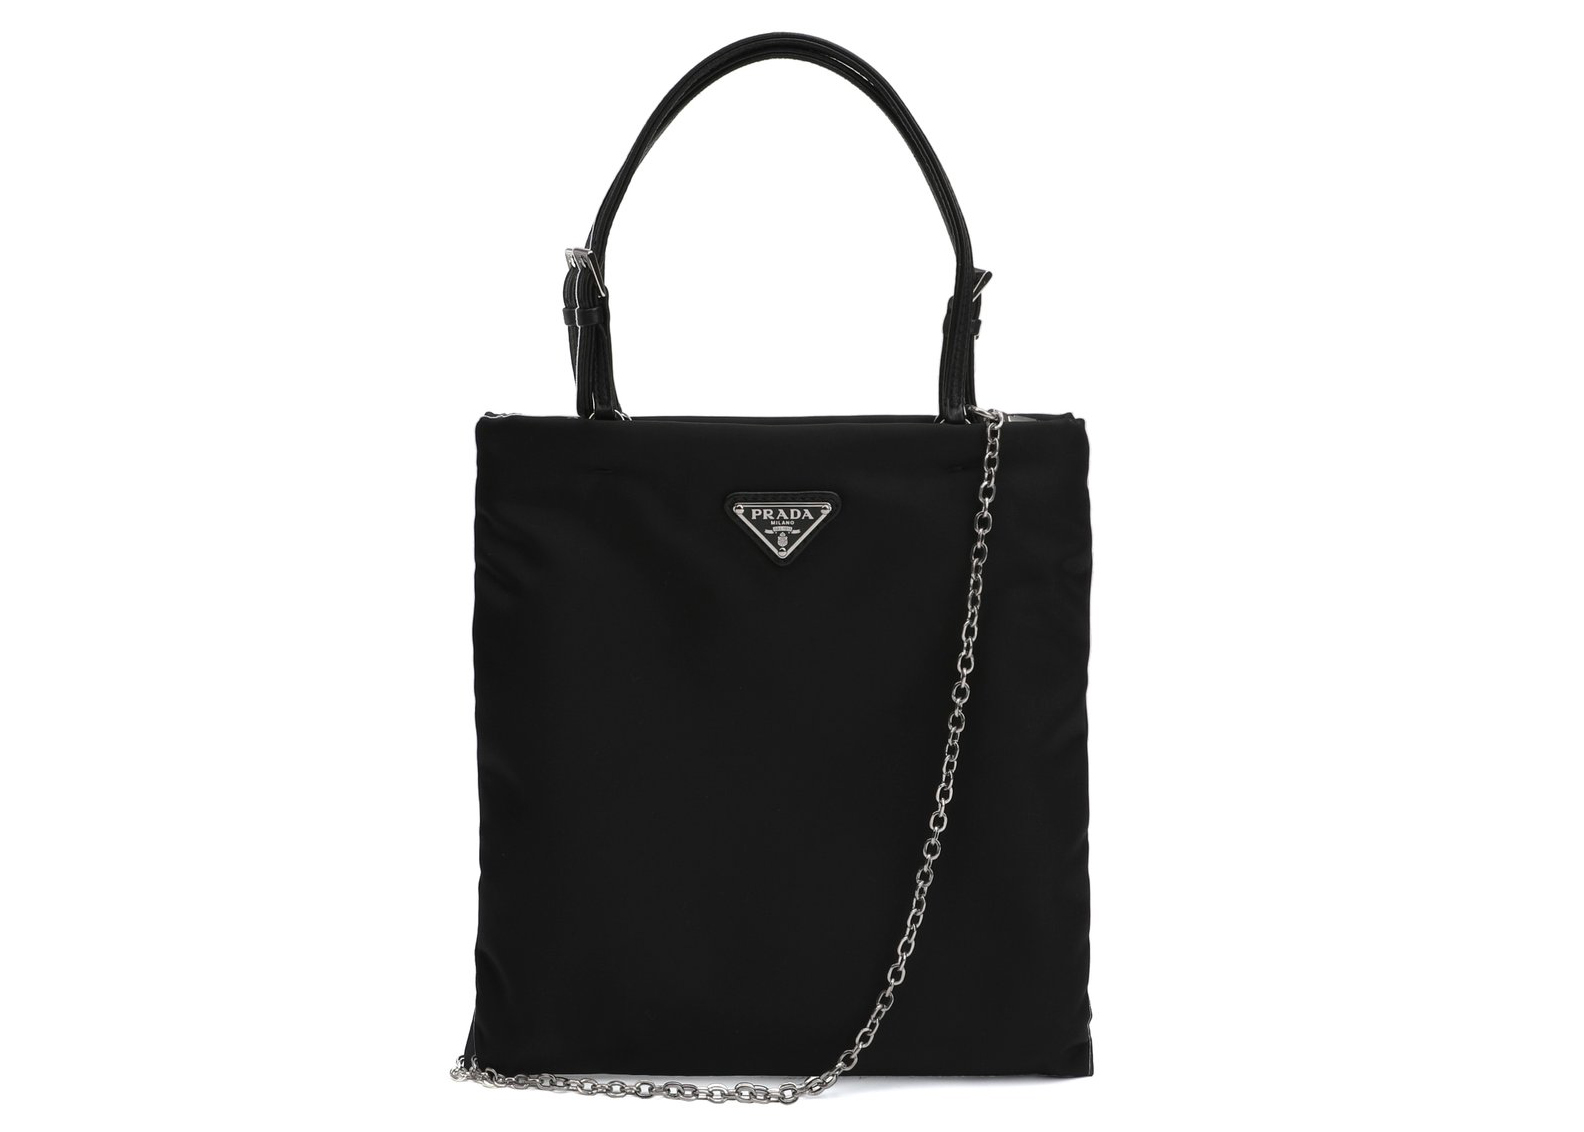 Prada Nylon Shoulder Bag Black in Nylon with Silver-tone